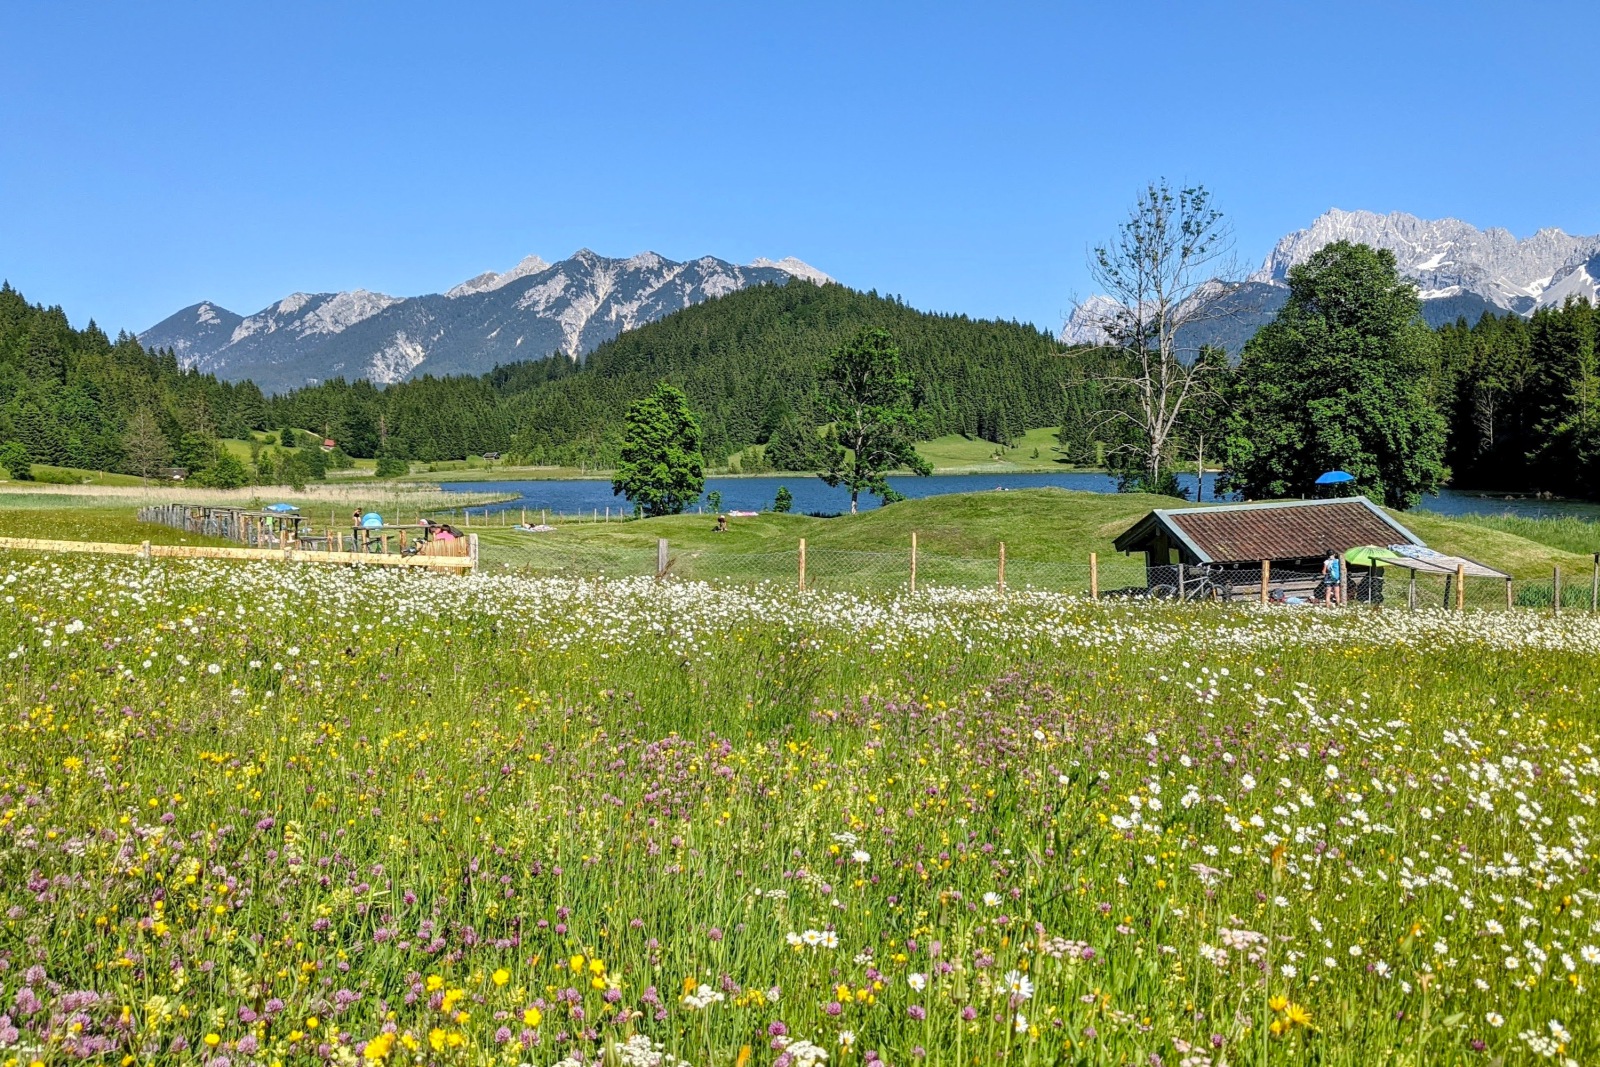 Blumenwiese vor Karwendelgebirge